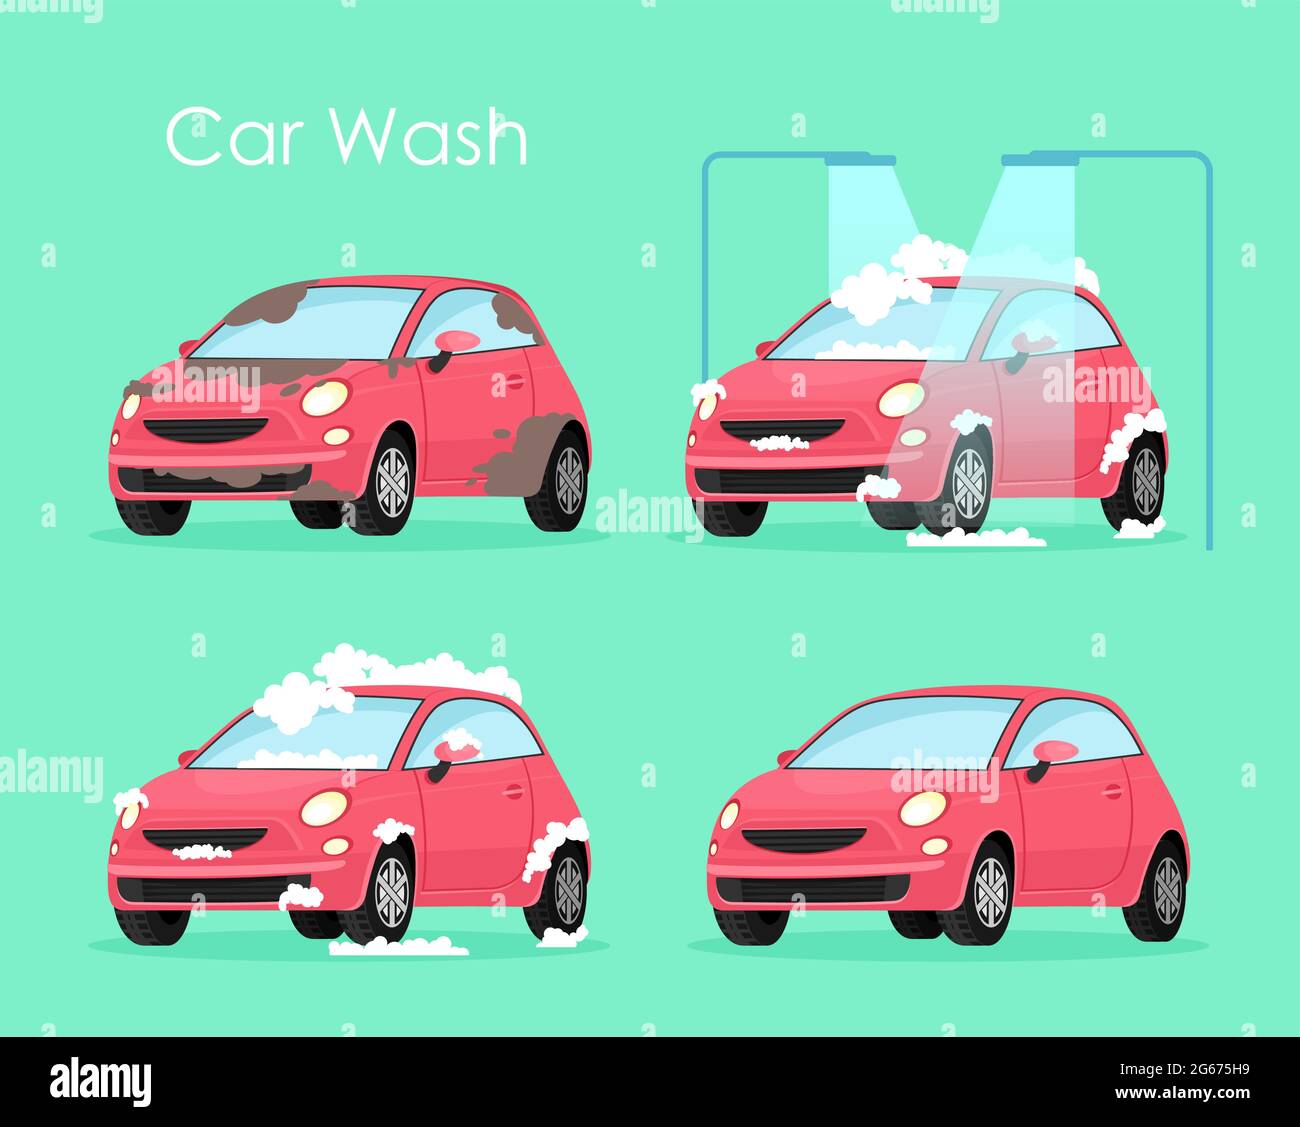 Illustration vectorielle du concept de lavage de voiture. Service de traitement de voiture de lavage, voiture rouge dans le savon et l'eau sur fond vert dans le style de dessin animé plat. Illustration de Vecteur